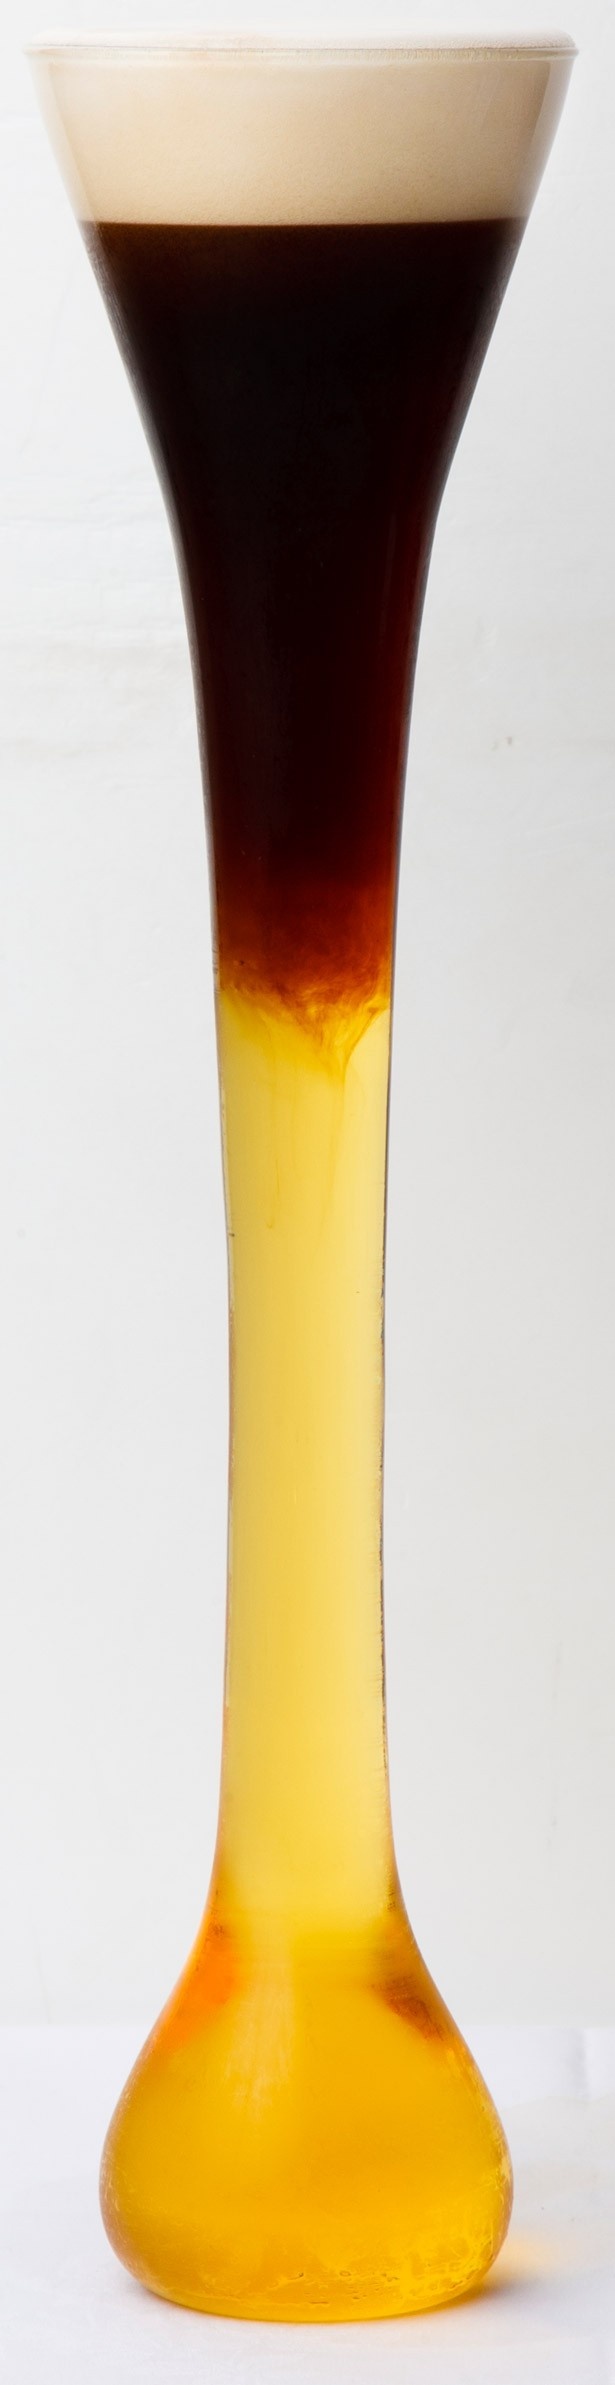 高さが約1ヤード(90cm)ある「ヤードグラス」は、エールビール用に17世紀のイングランドで発明された ※実際に提供されるグラスの大きさとは異なる